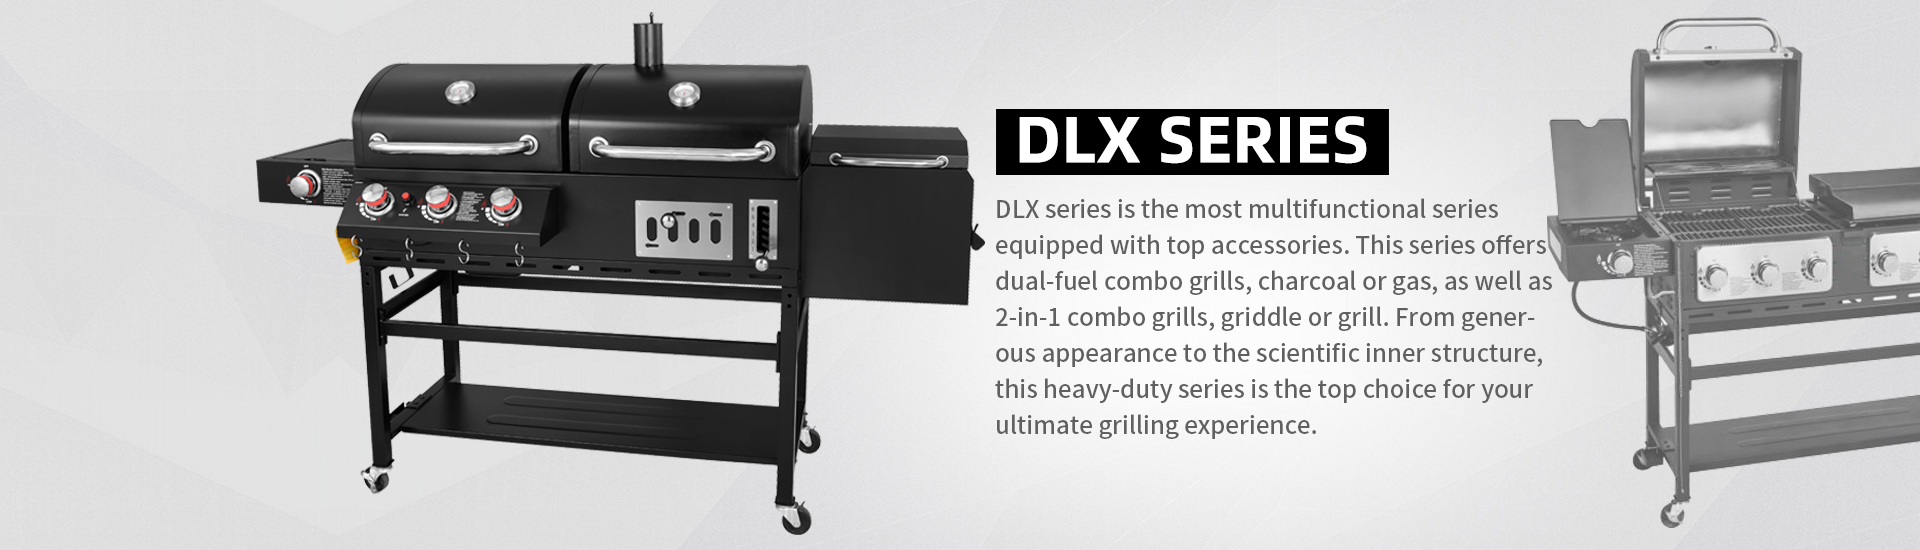 DLX Series